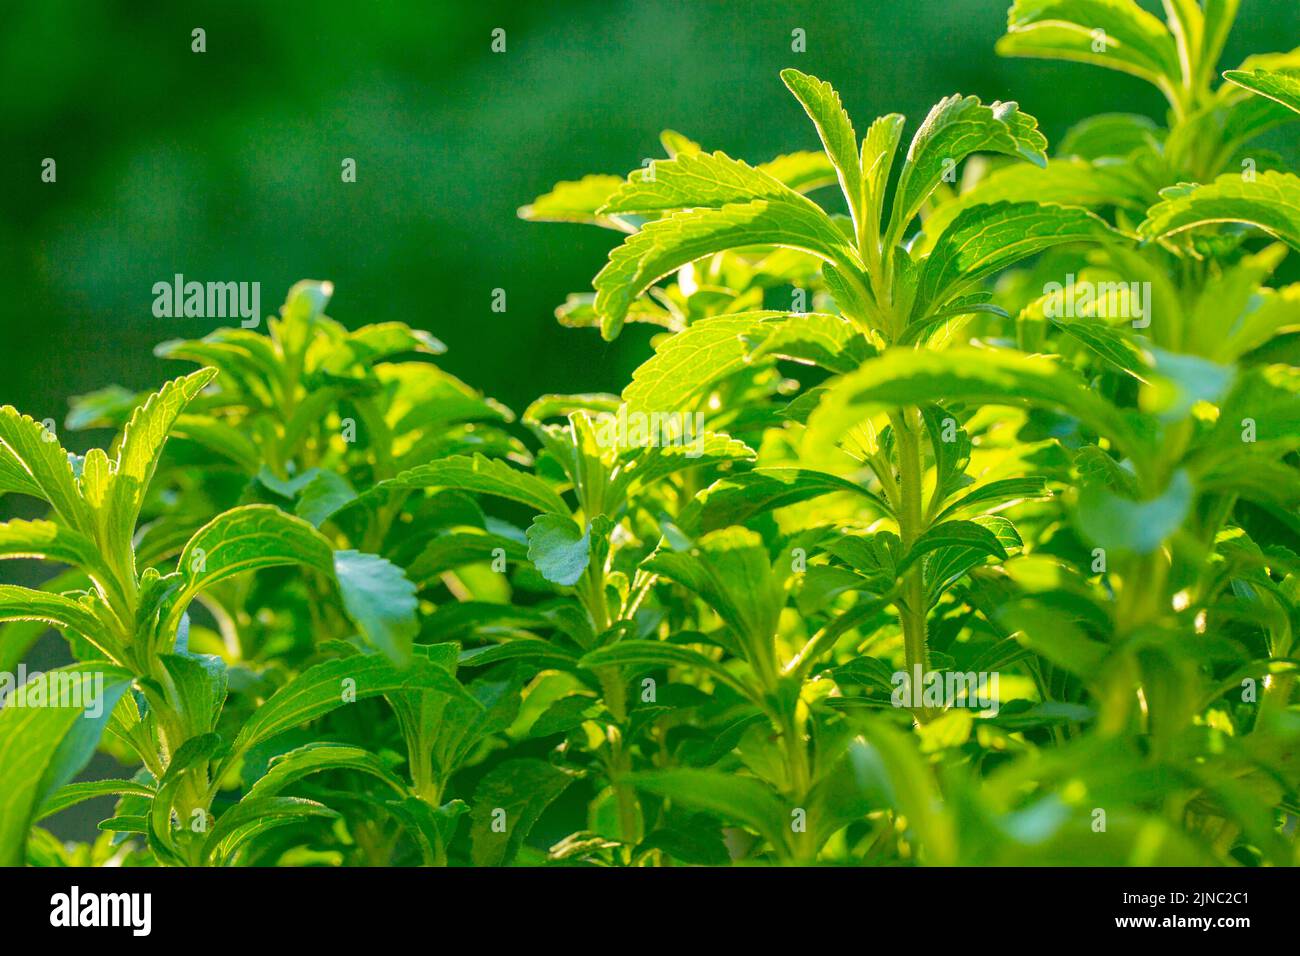 Stevia.Organic endulzante natural.Plantas de estevia.Twig verde de estevia.Endulzante vegetal de baja caloría alternativo Foto de stock